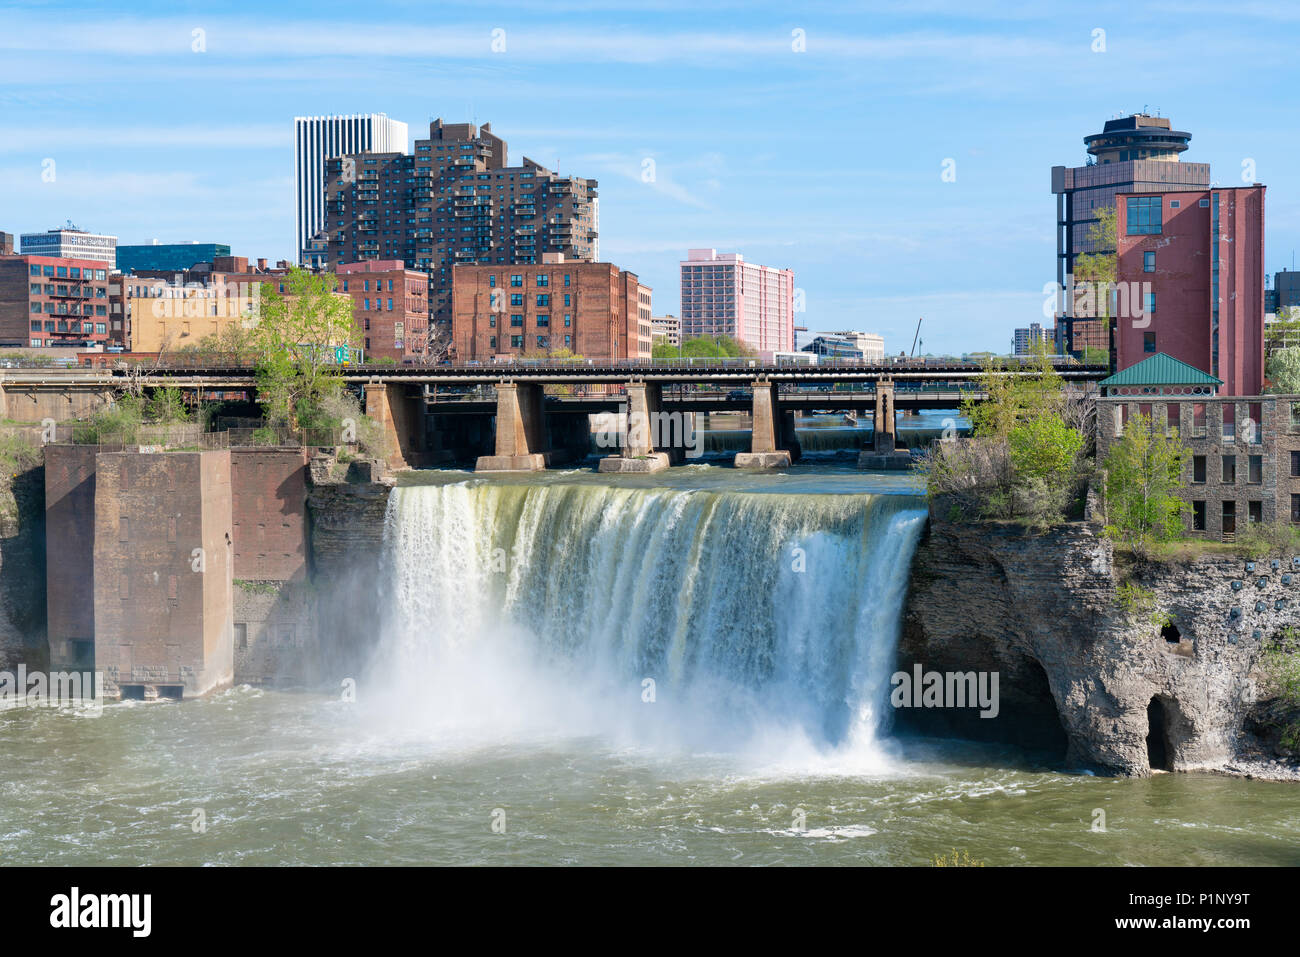 ROCHESTER, NY - 14 de mayo de 2018: la ciudad de Rochester, Nueva York, en el Alto cae a lo largo del río Genesee Foto de stock